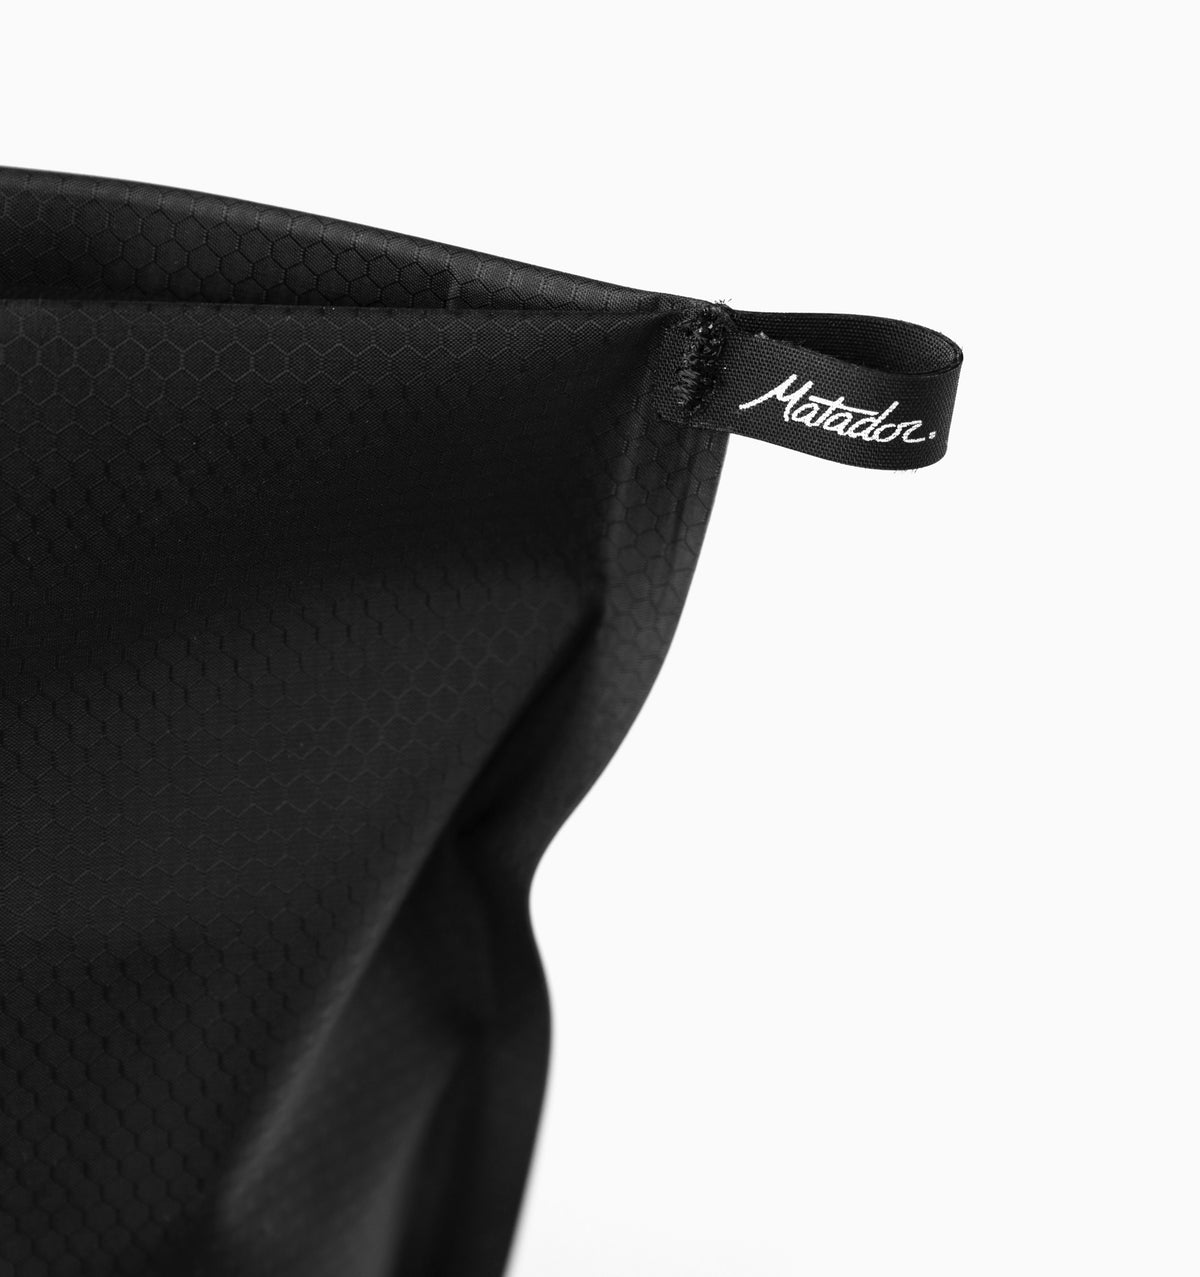 Matador FlatPak™ Zipper Toiletry Case - Charcoal